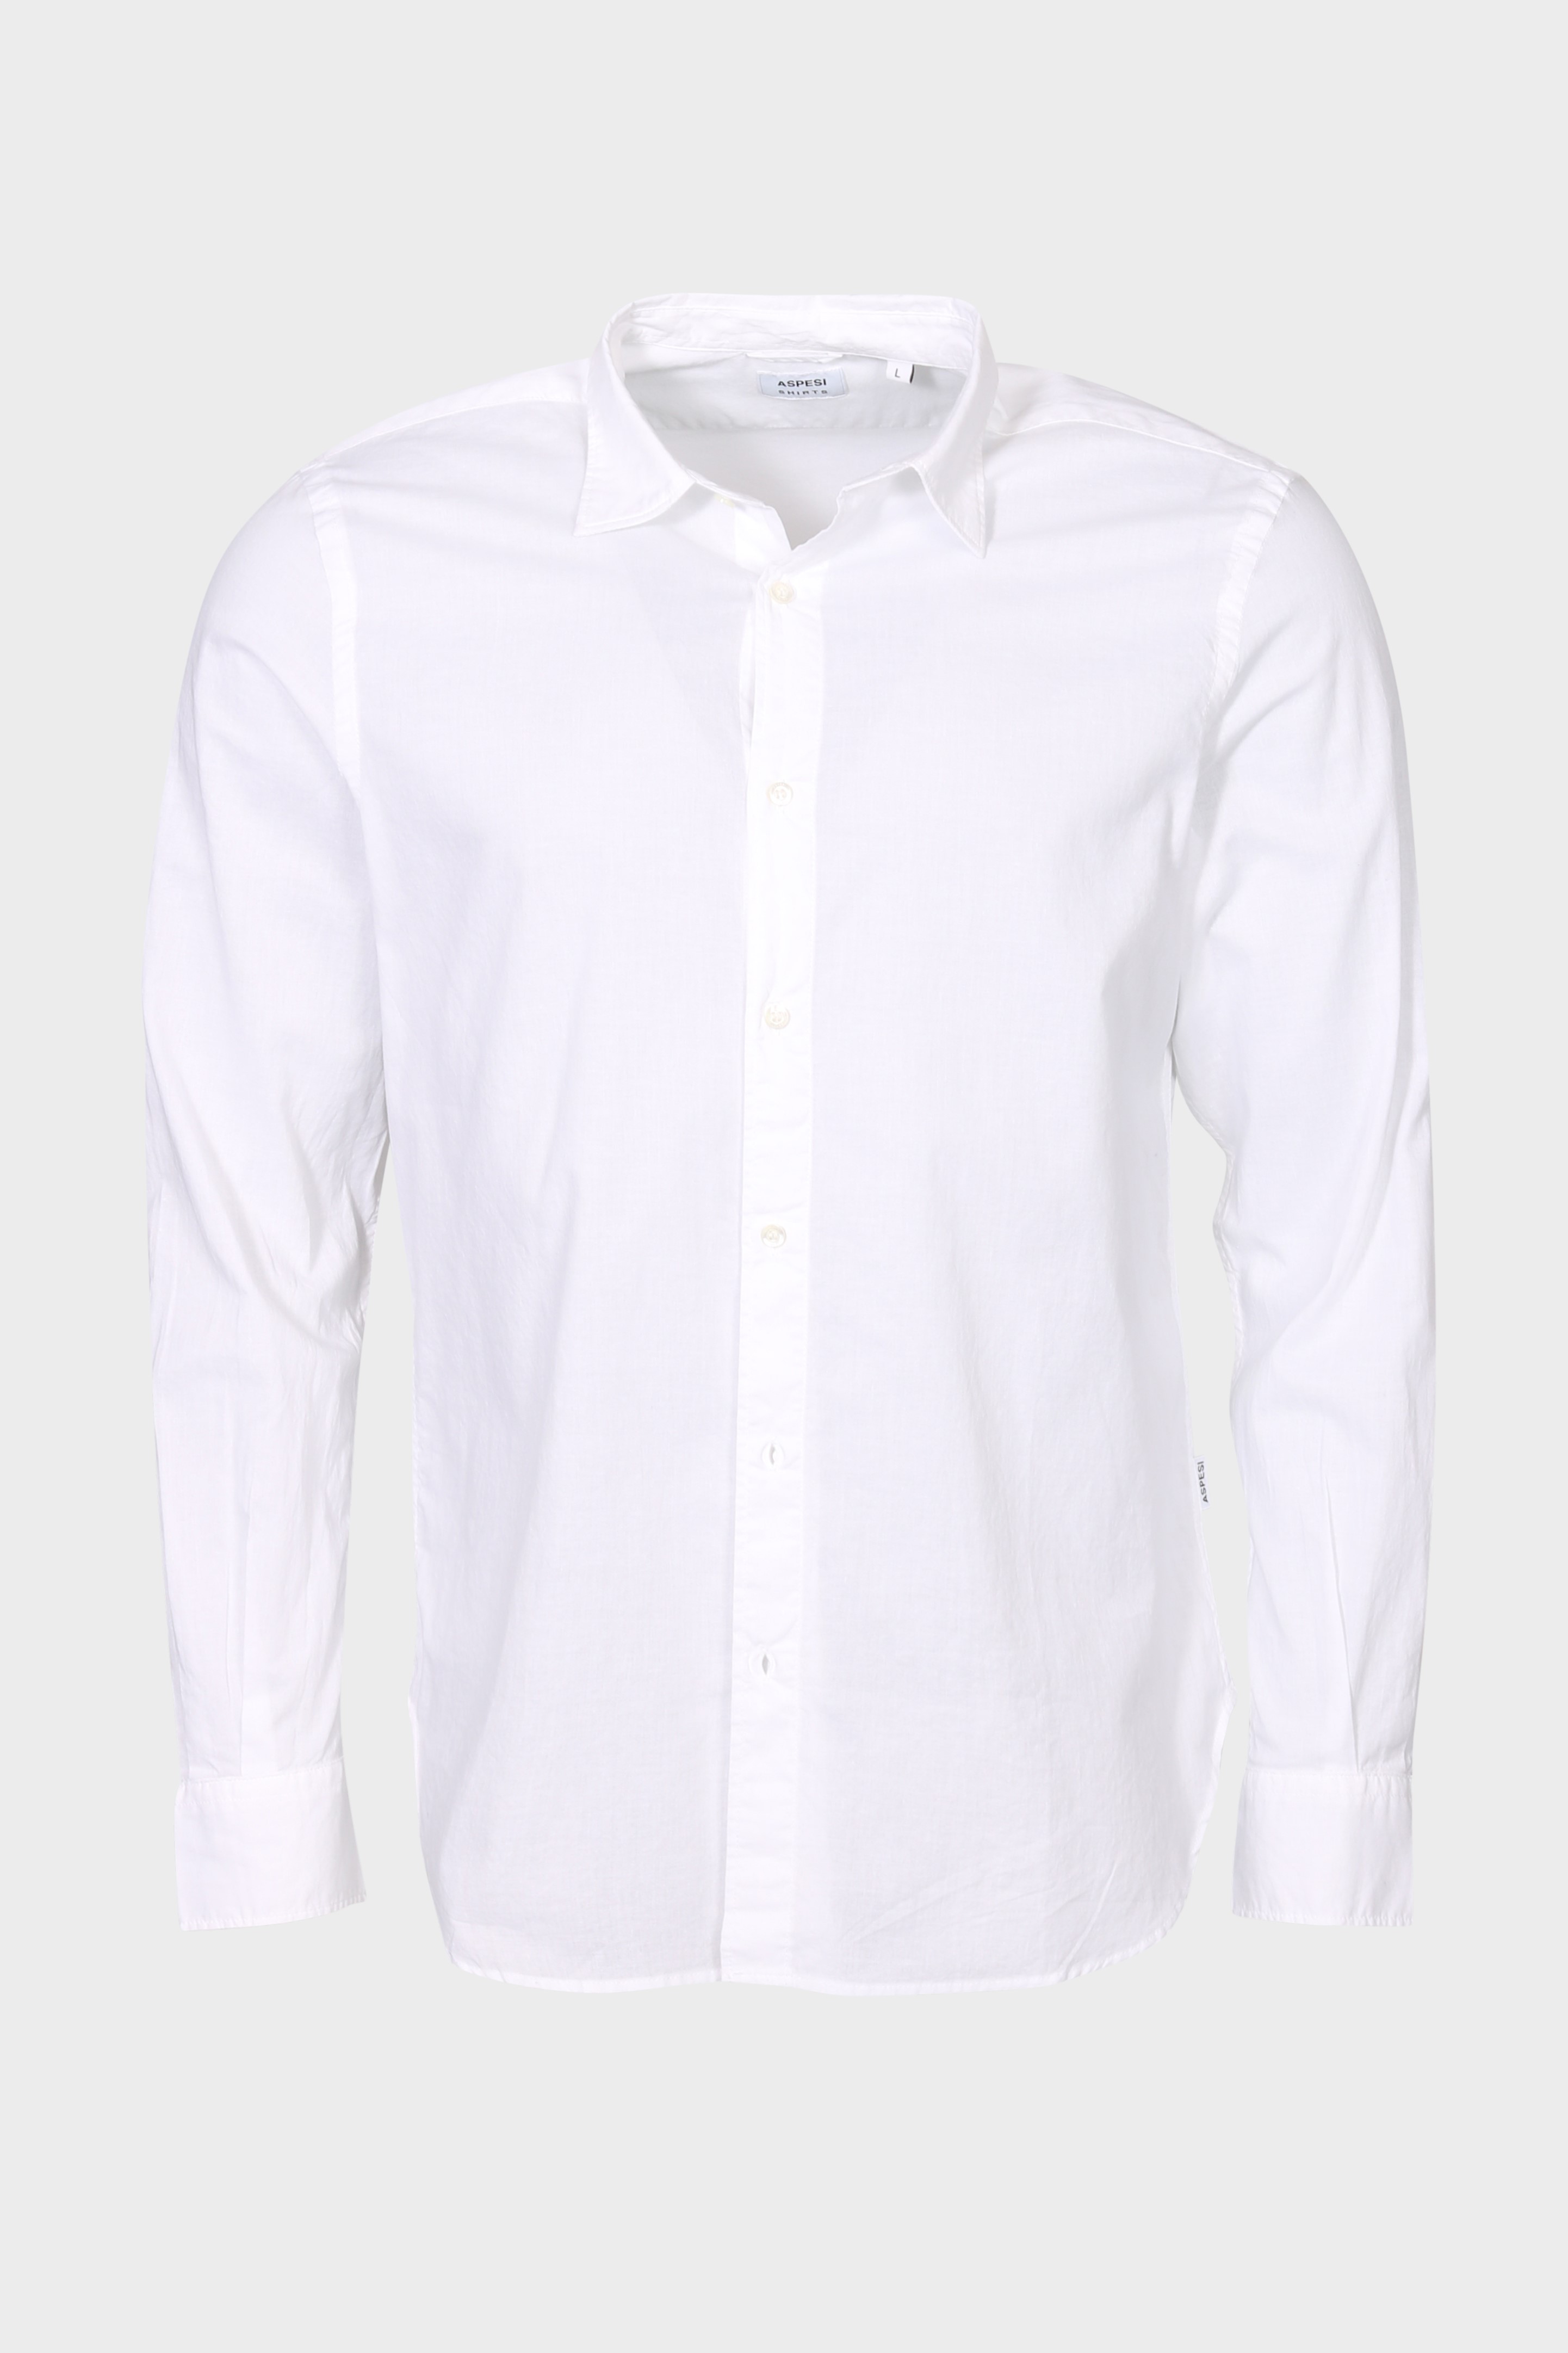 ASPESI Light Shirt in White L